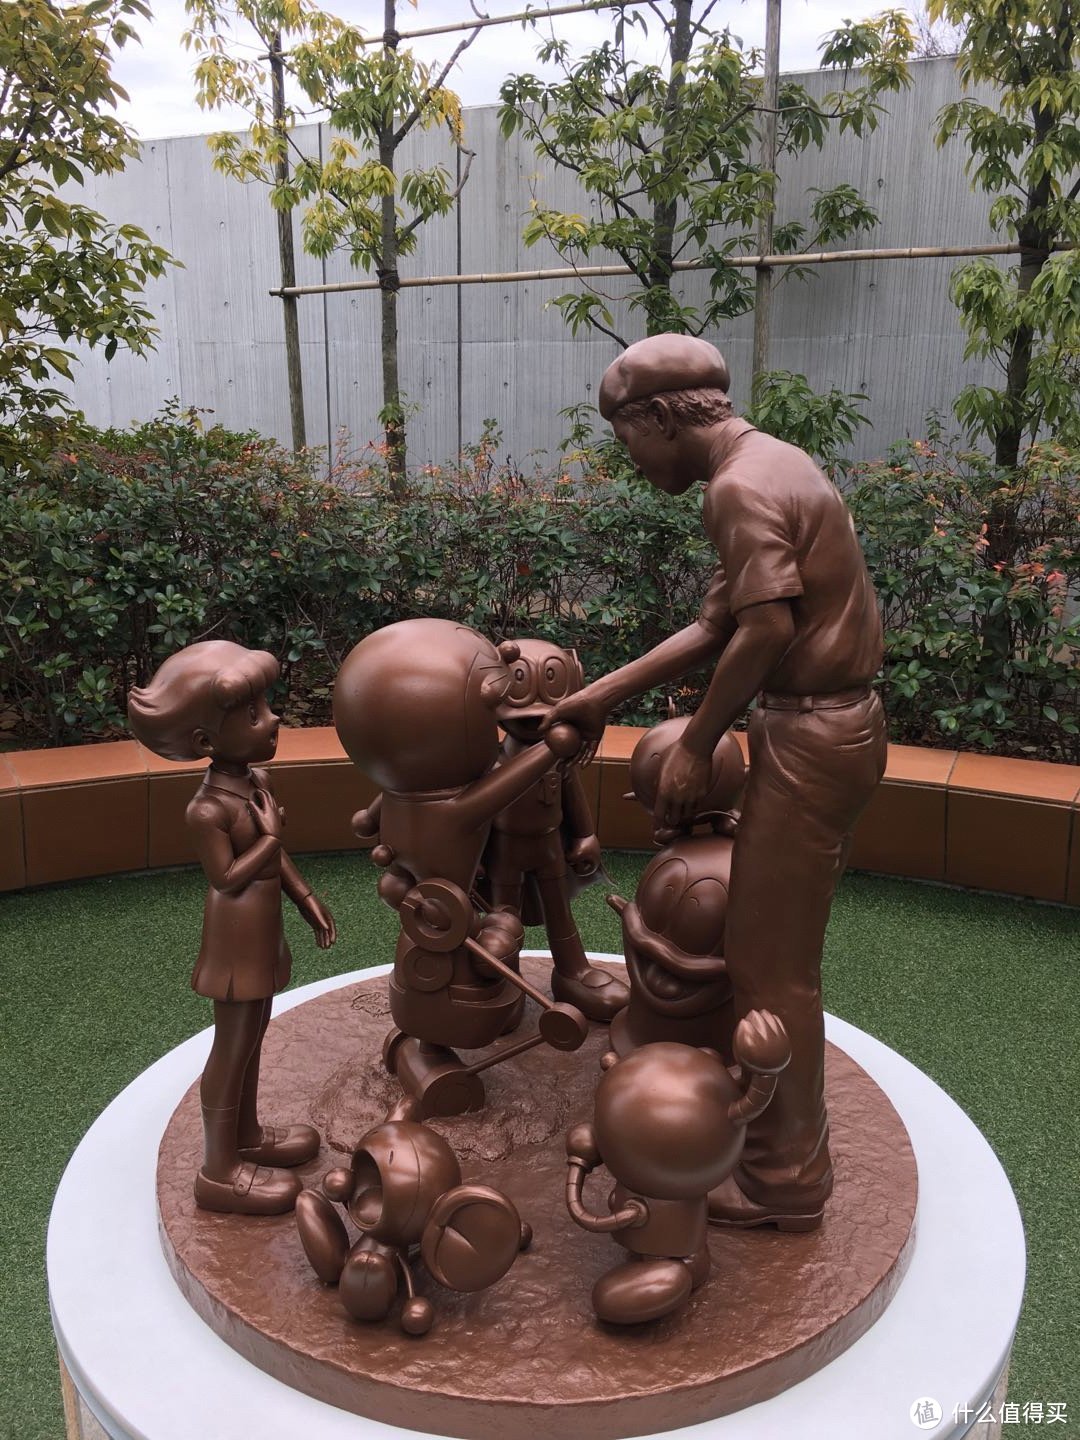 作为20多年的哆啦A梦粉，看到这个雕塑，差点泪目